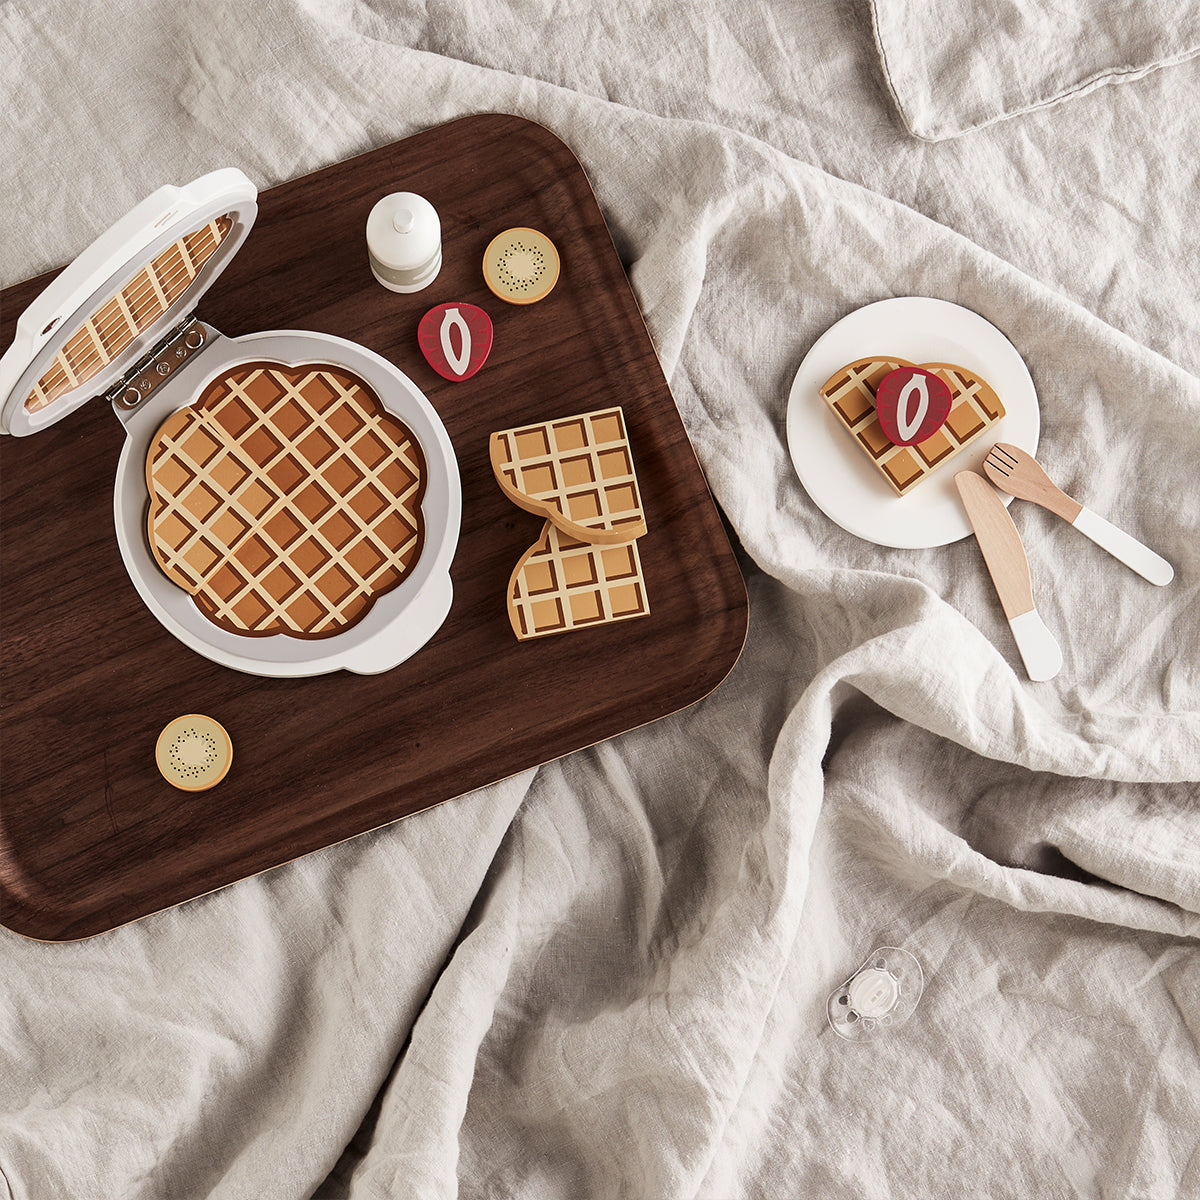 Met het Kid’s Concept wafelijzer kan jouw kindje heerlijke wafels maken! Het houten wafelijzer wordt geleverd met allemaal toppings zodat je de wafels nog lekkerder kunt maken. Vul de keukenspullen voor het speelkeukentje zo mooi aan! VanZus.